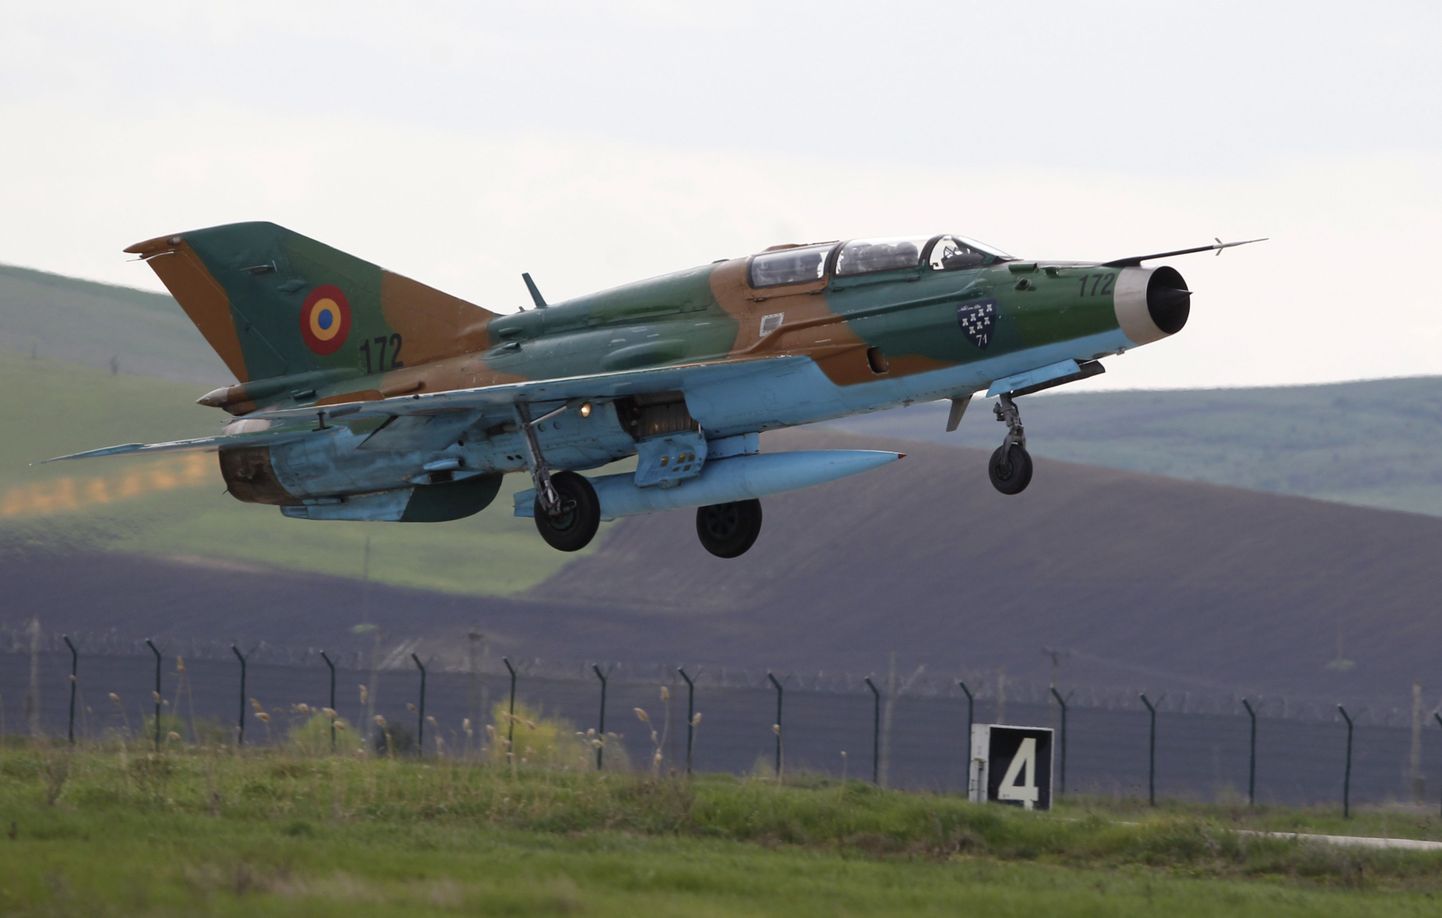 Rumeenia õhujõududel on MiG-21 lennukeid kokku 35, millest tegevteenistuses on üle 20.